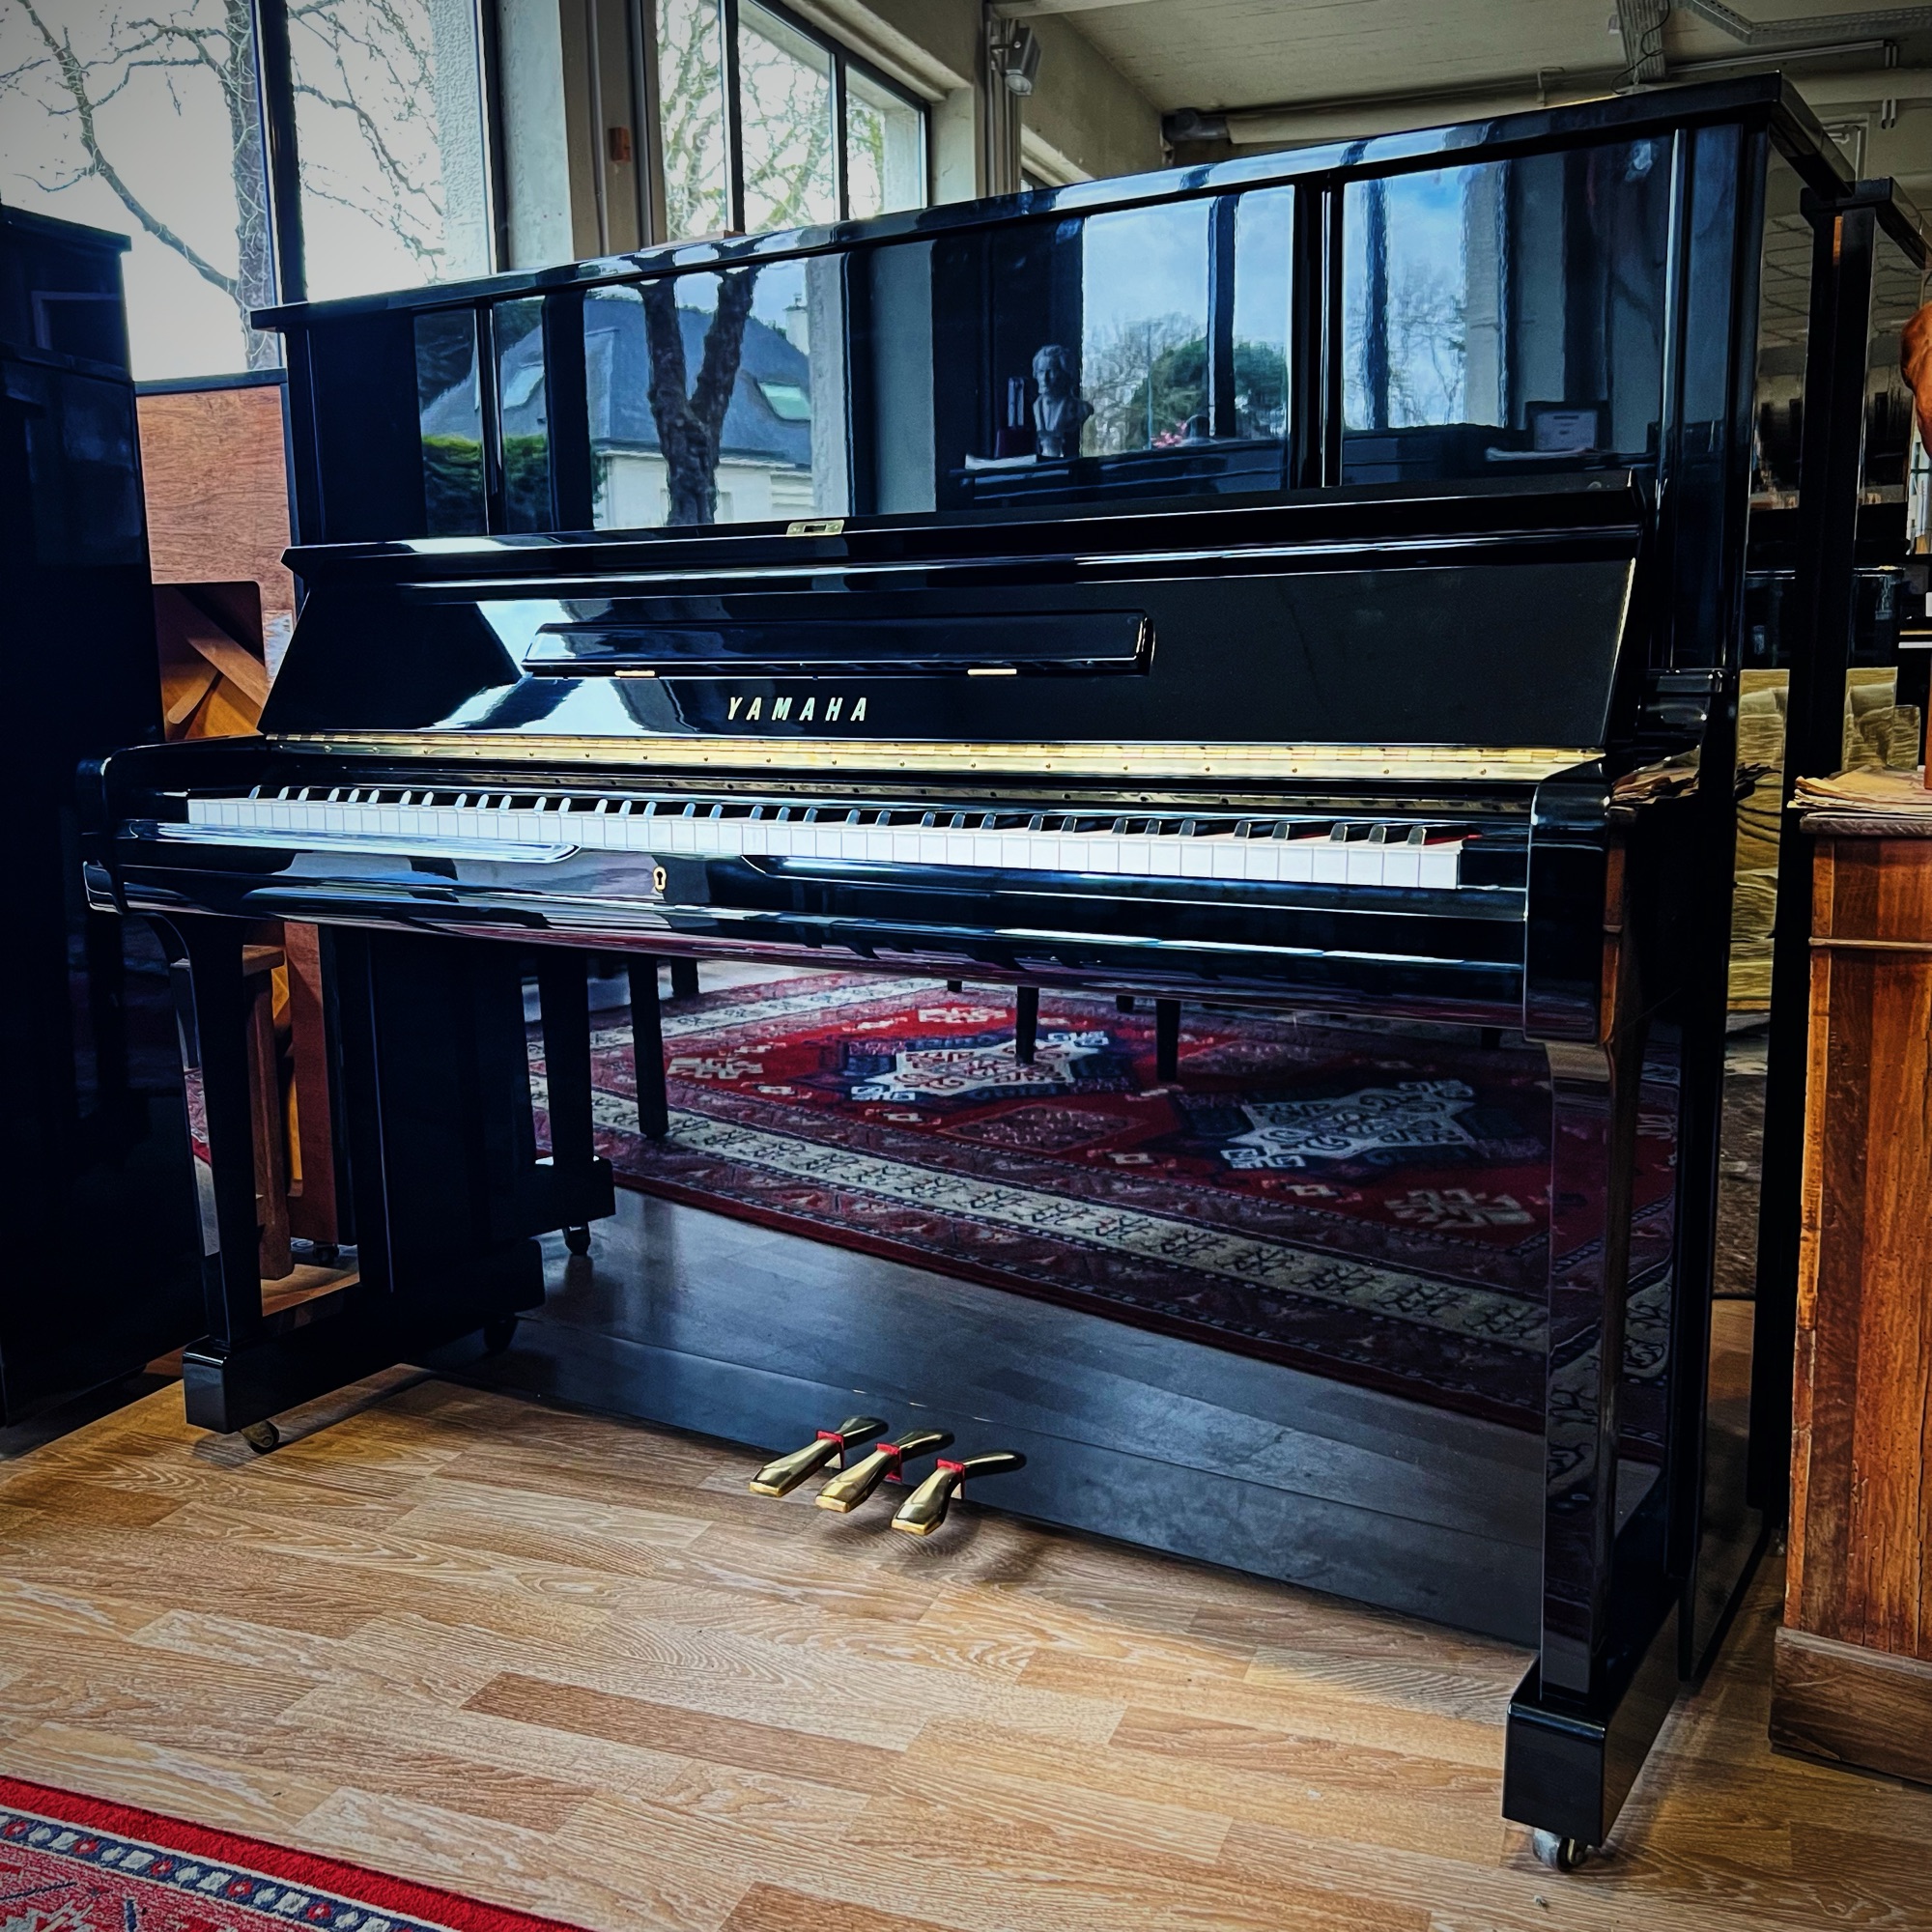 Piano Yamaha d'occasion modele UX1 chez Bonnaventure à Caen, Normandie.